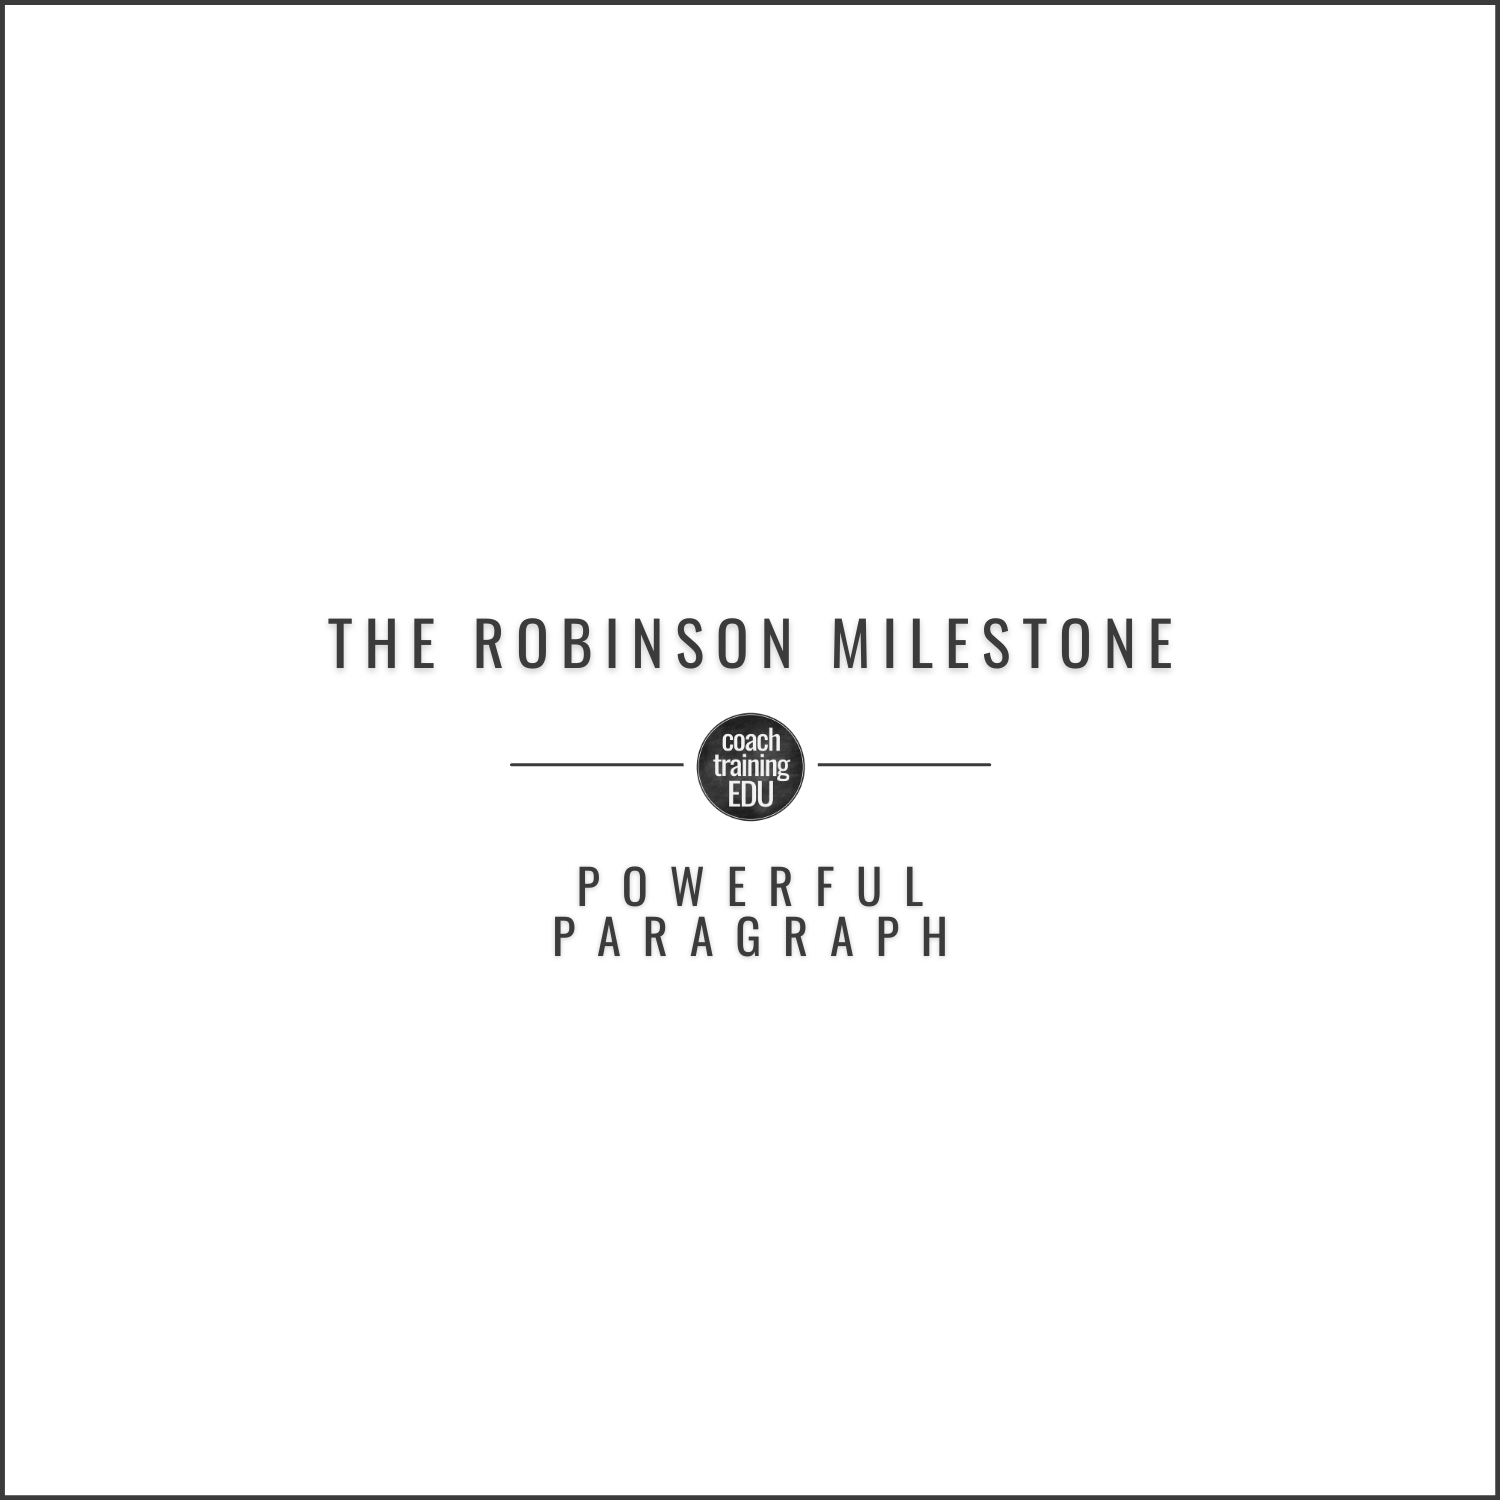 The Robinson Milestone